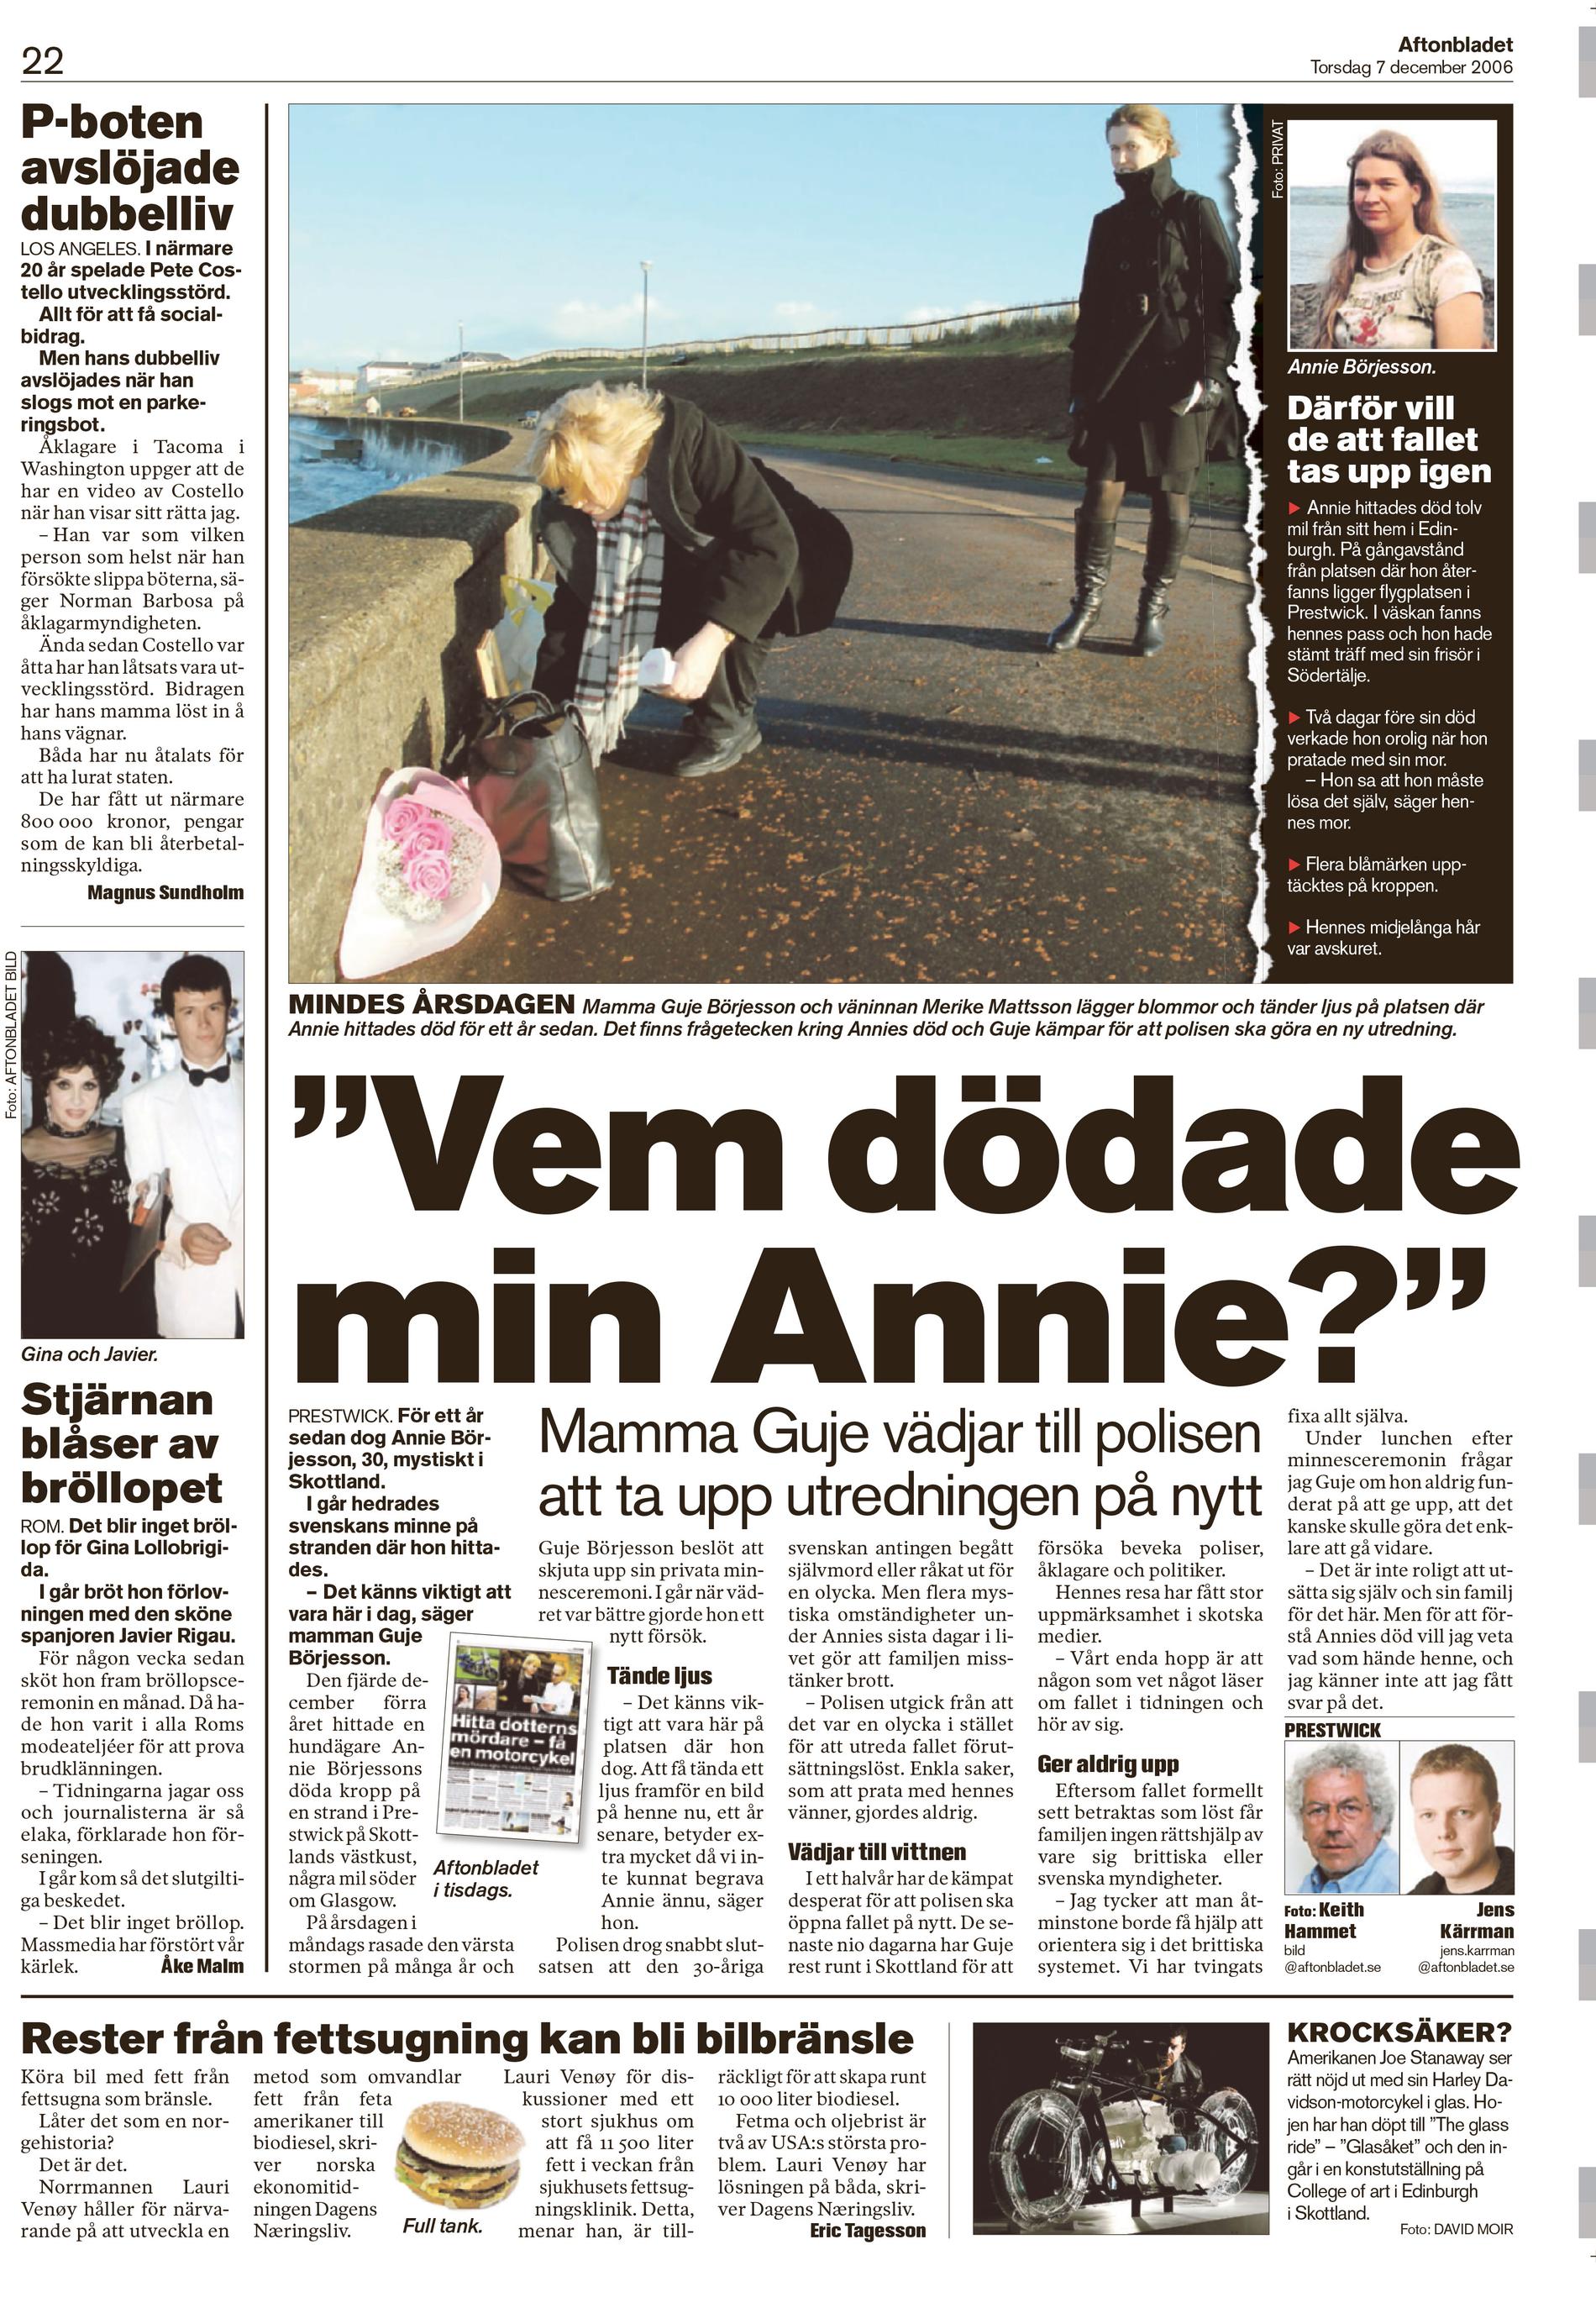 Aftonbladet 7 december 2006.